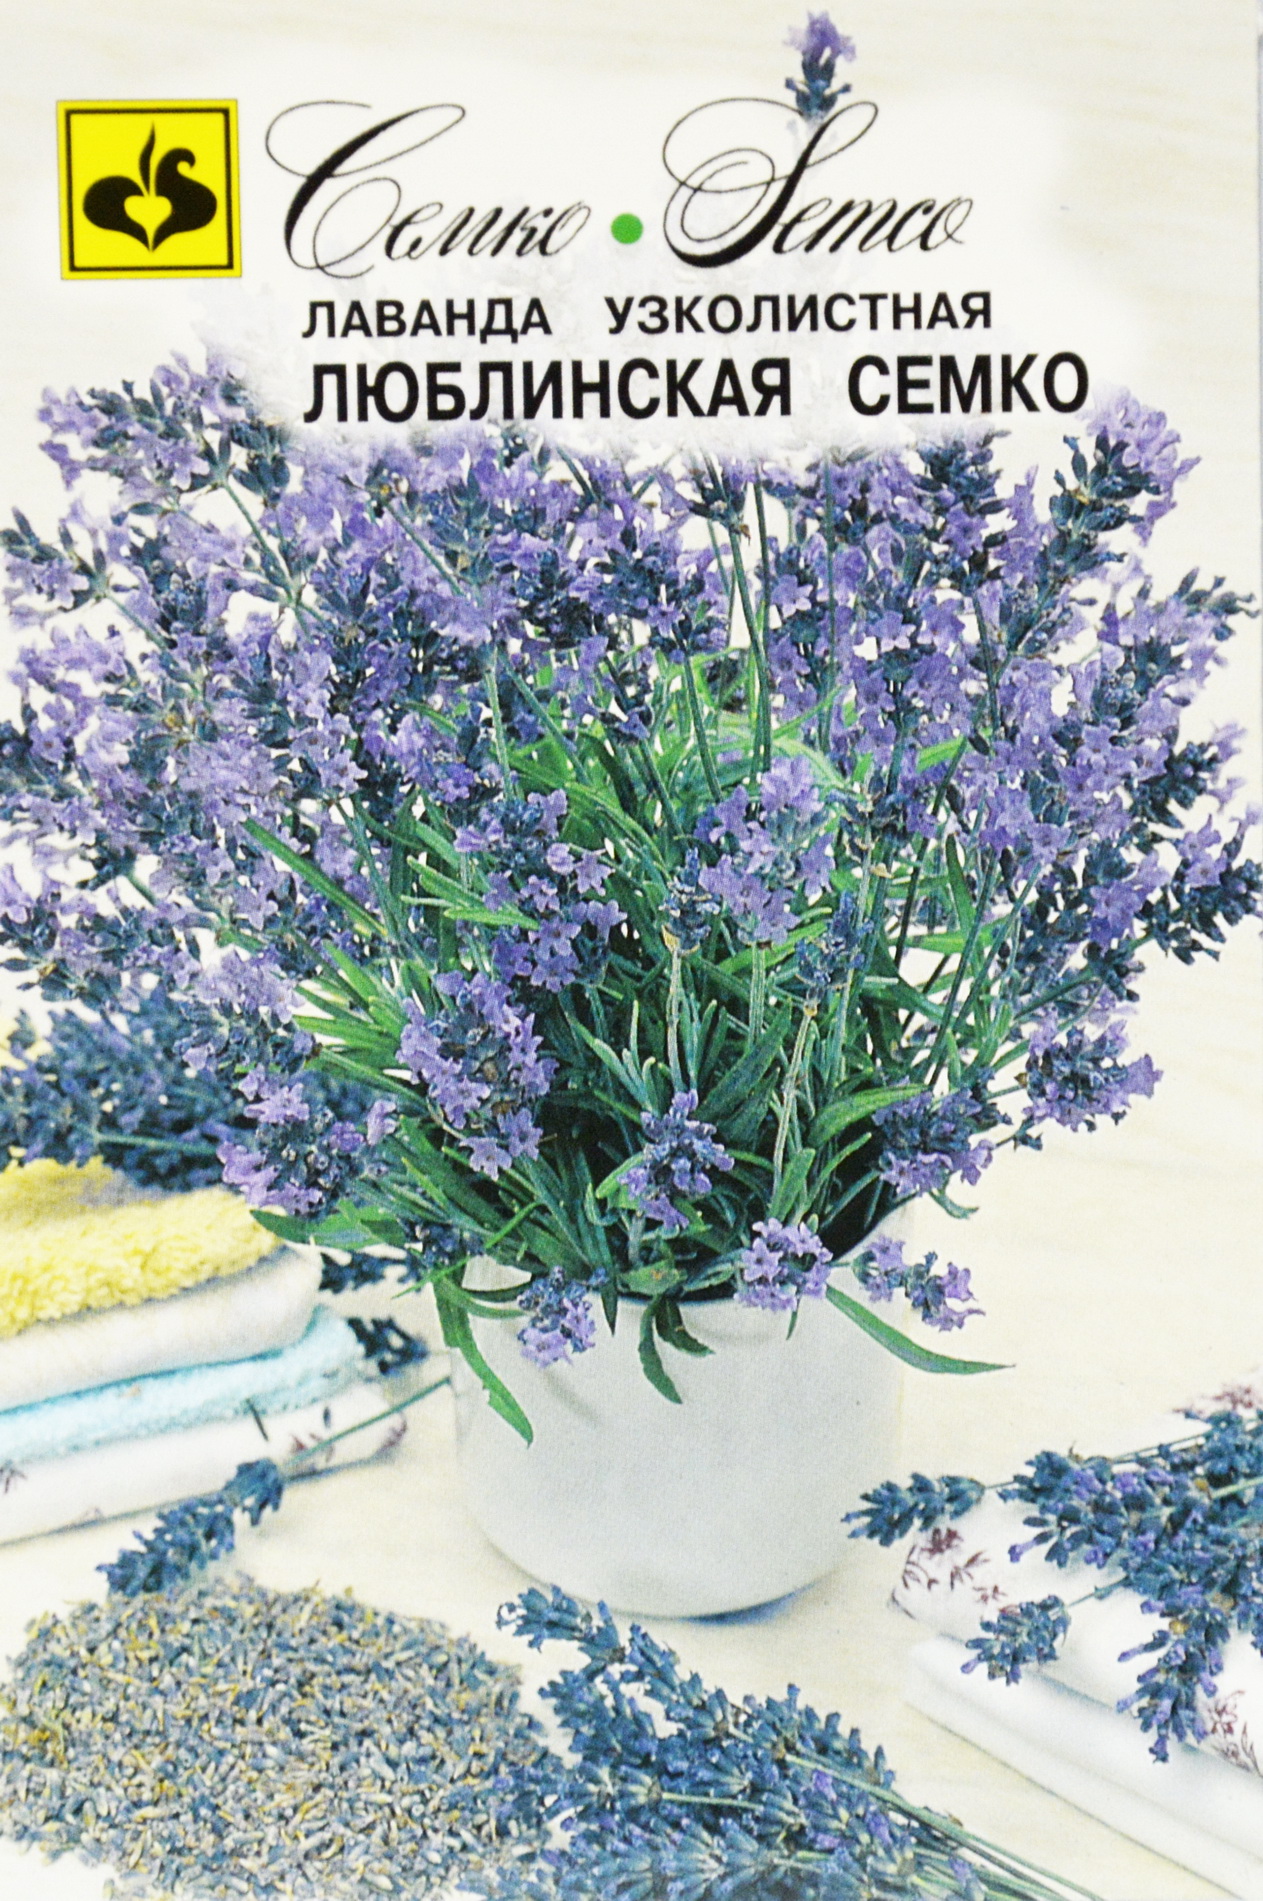 Семена лаванда декоративная Семко Люблинская 190359 1 уп.